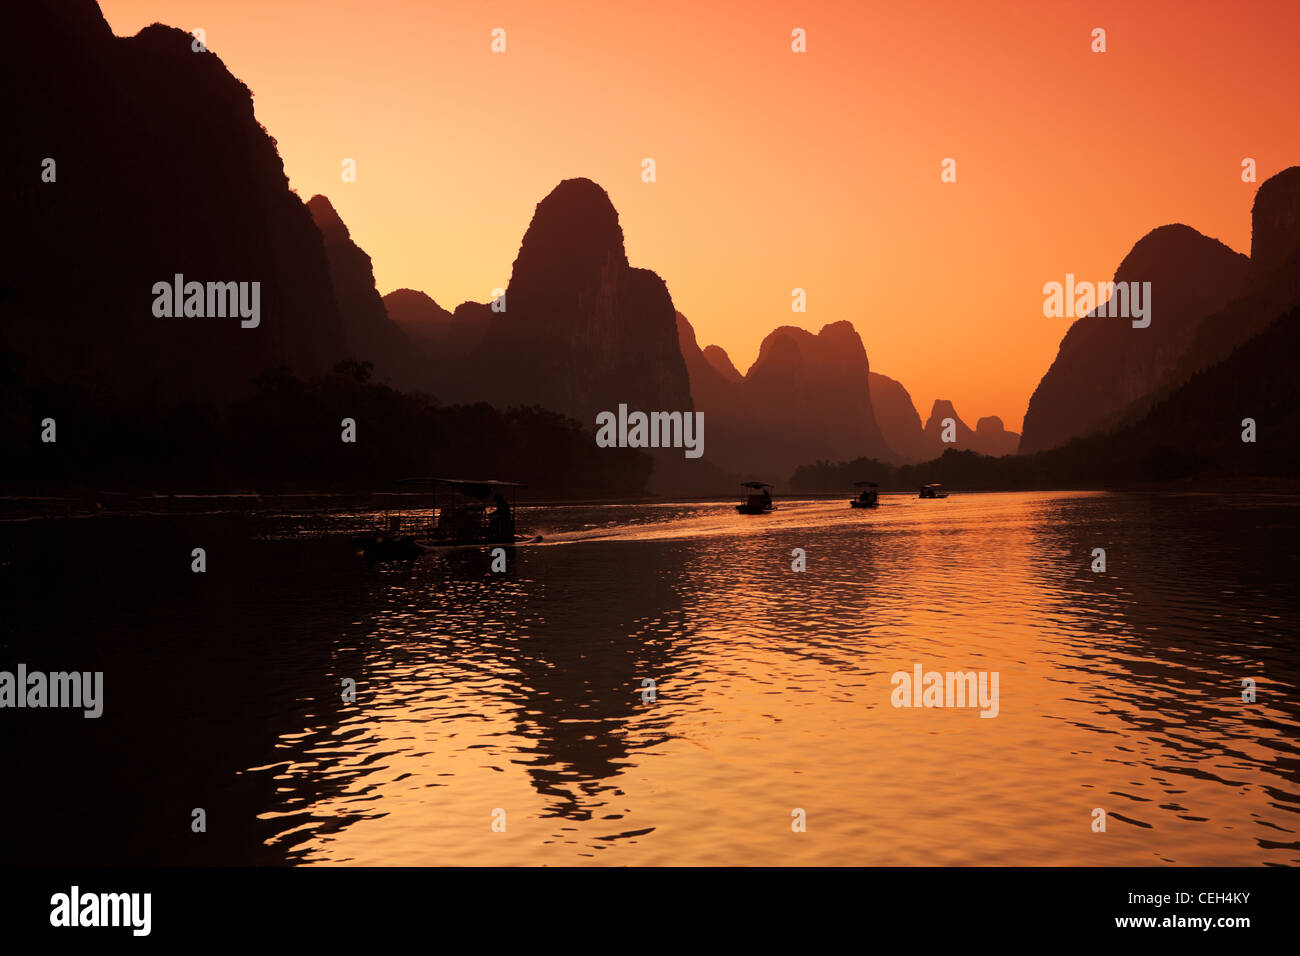 Voyage Chine Guilin rivière li phénomène naturel des terres de l'Asie de l'Est Région du Guangxi Fonction Géographie Physique scène tranquille Banque D'Images